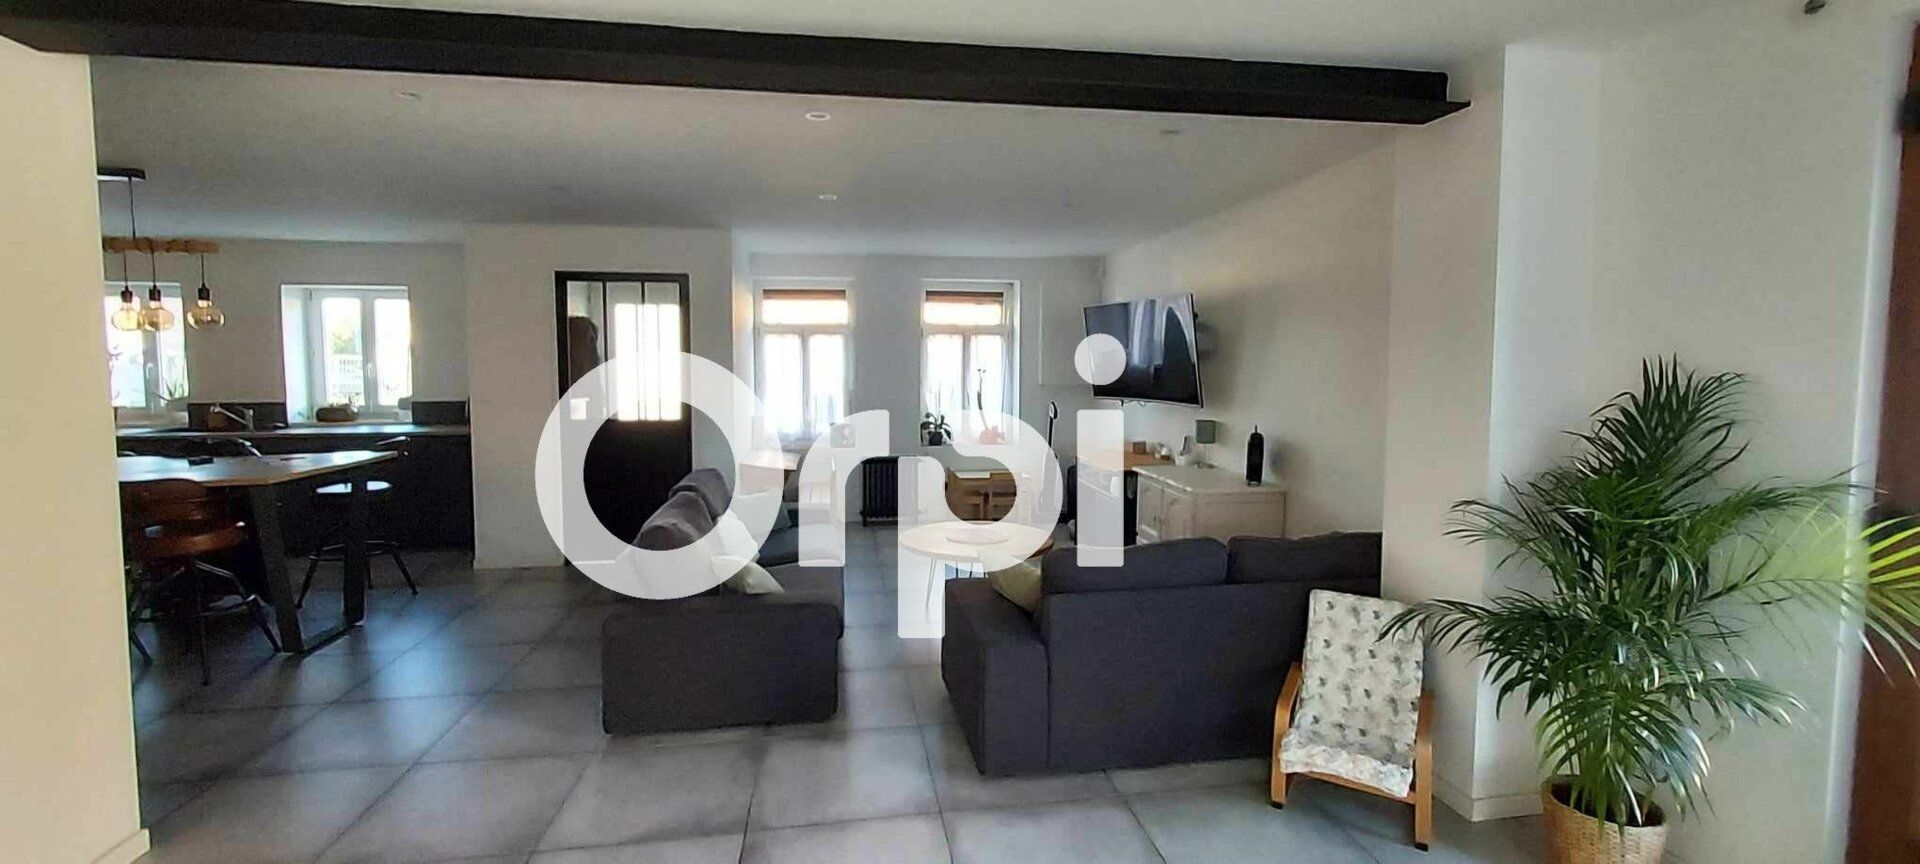 Maison à vendre 5 146m2 à Auchy-lez-Orchies vignette-2